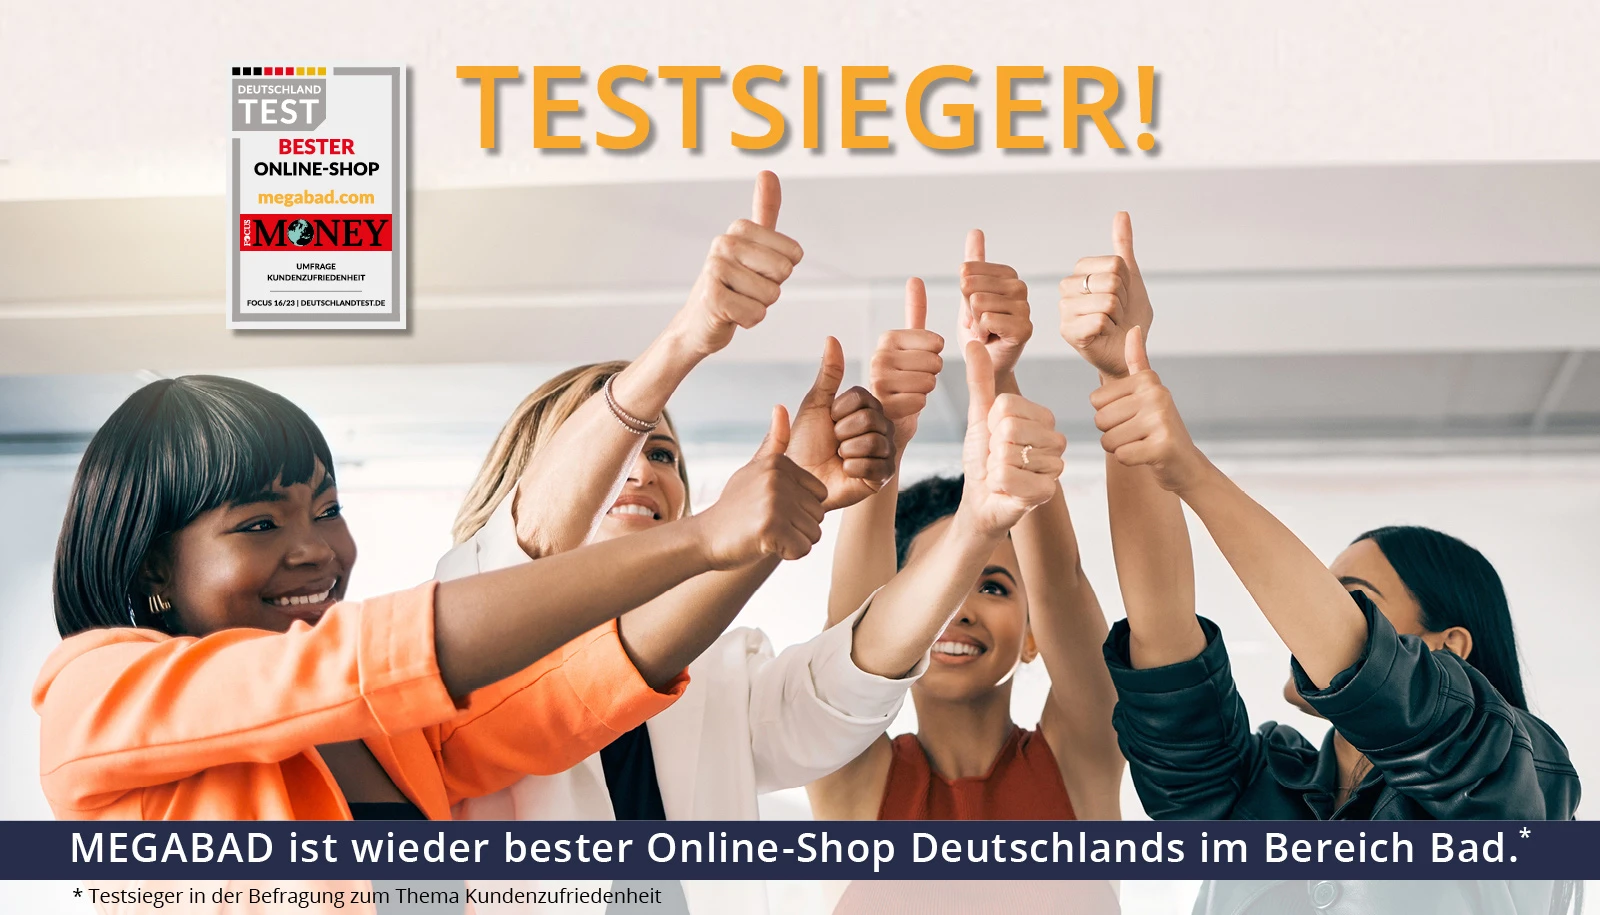 Testsieger bester Online-Shop Deutschlands im Bereich Bad